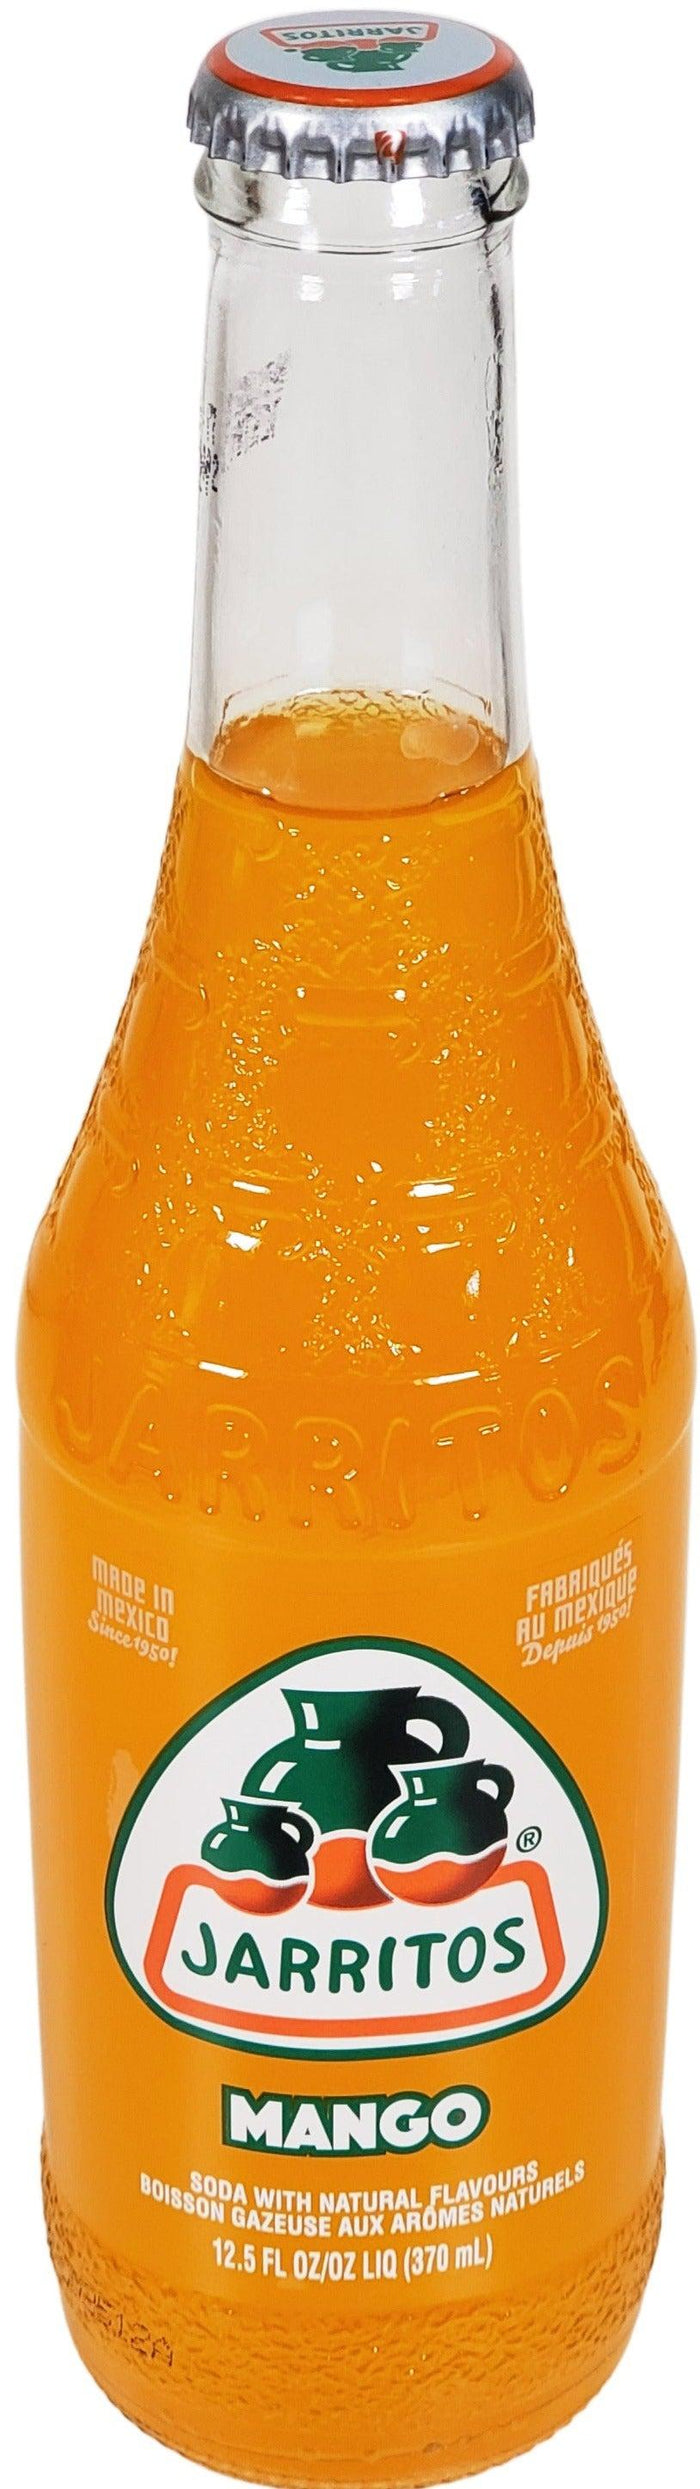 Jarritos - Mango - Bottles